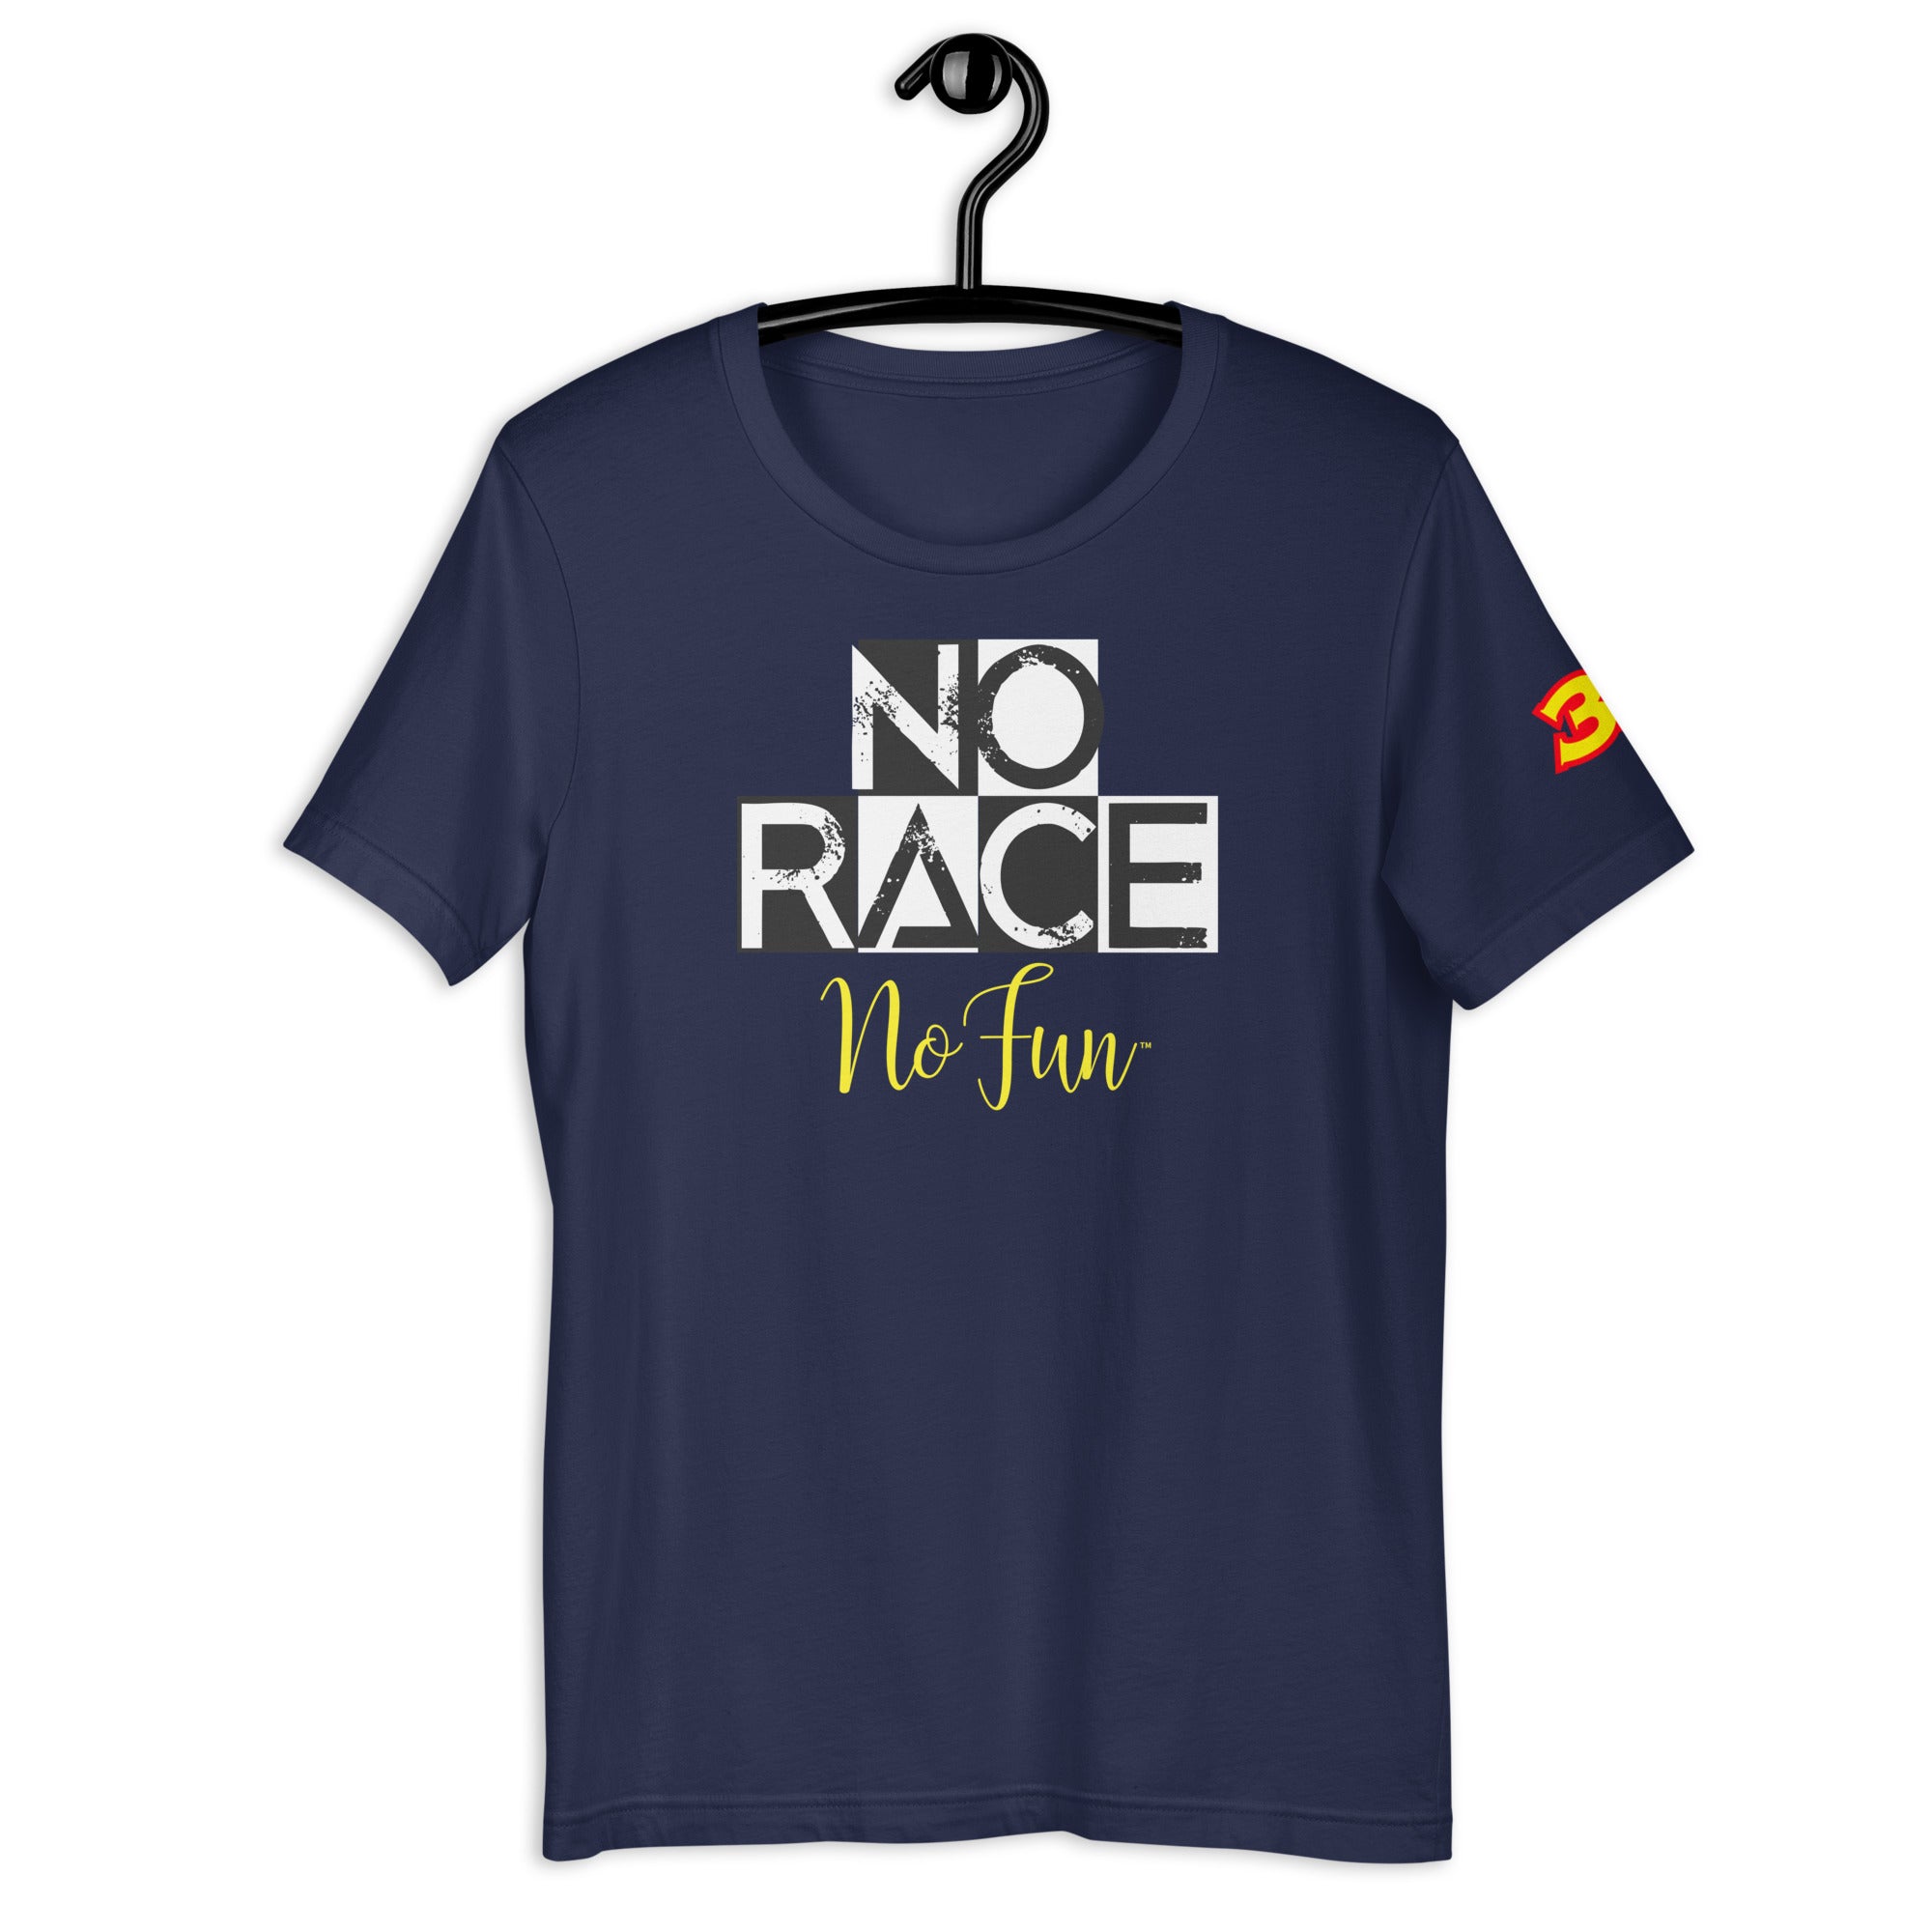 No Race No Fun 33, T-Shirt